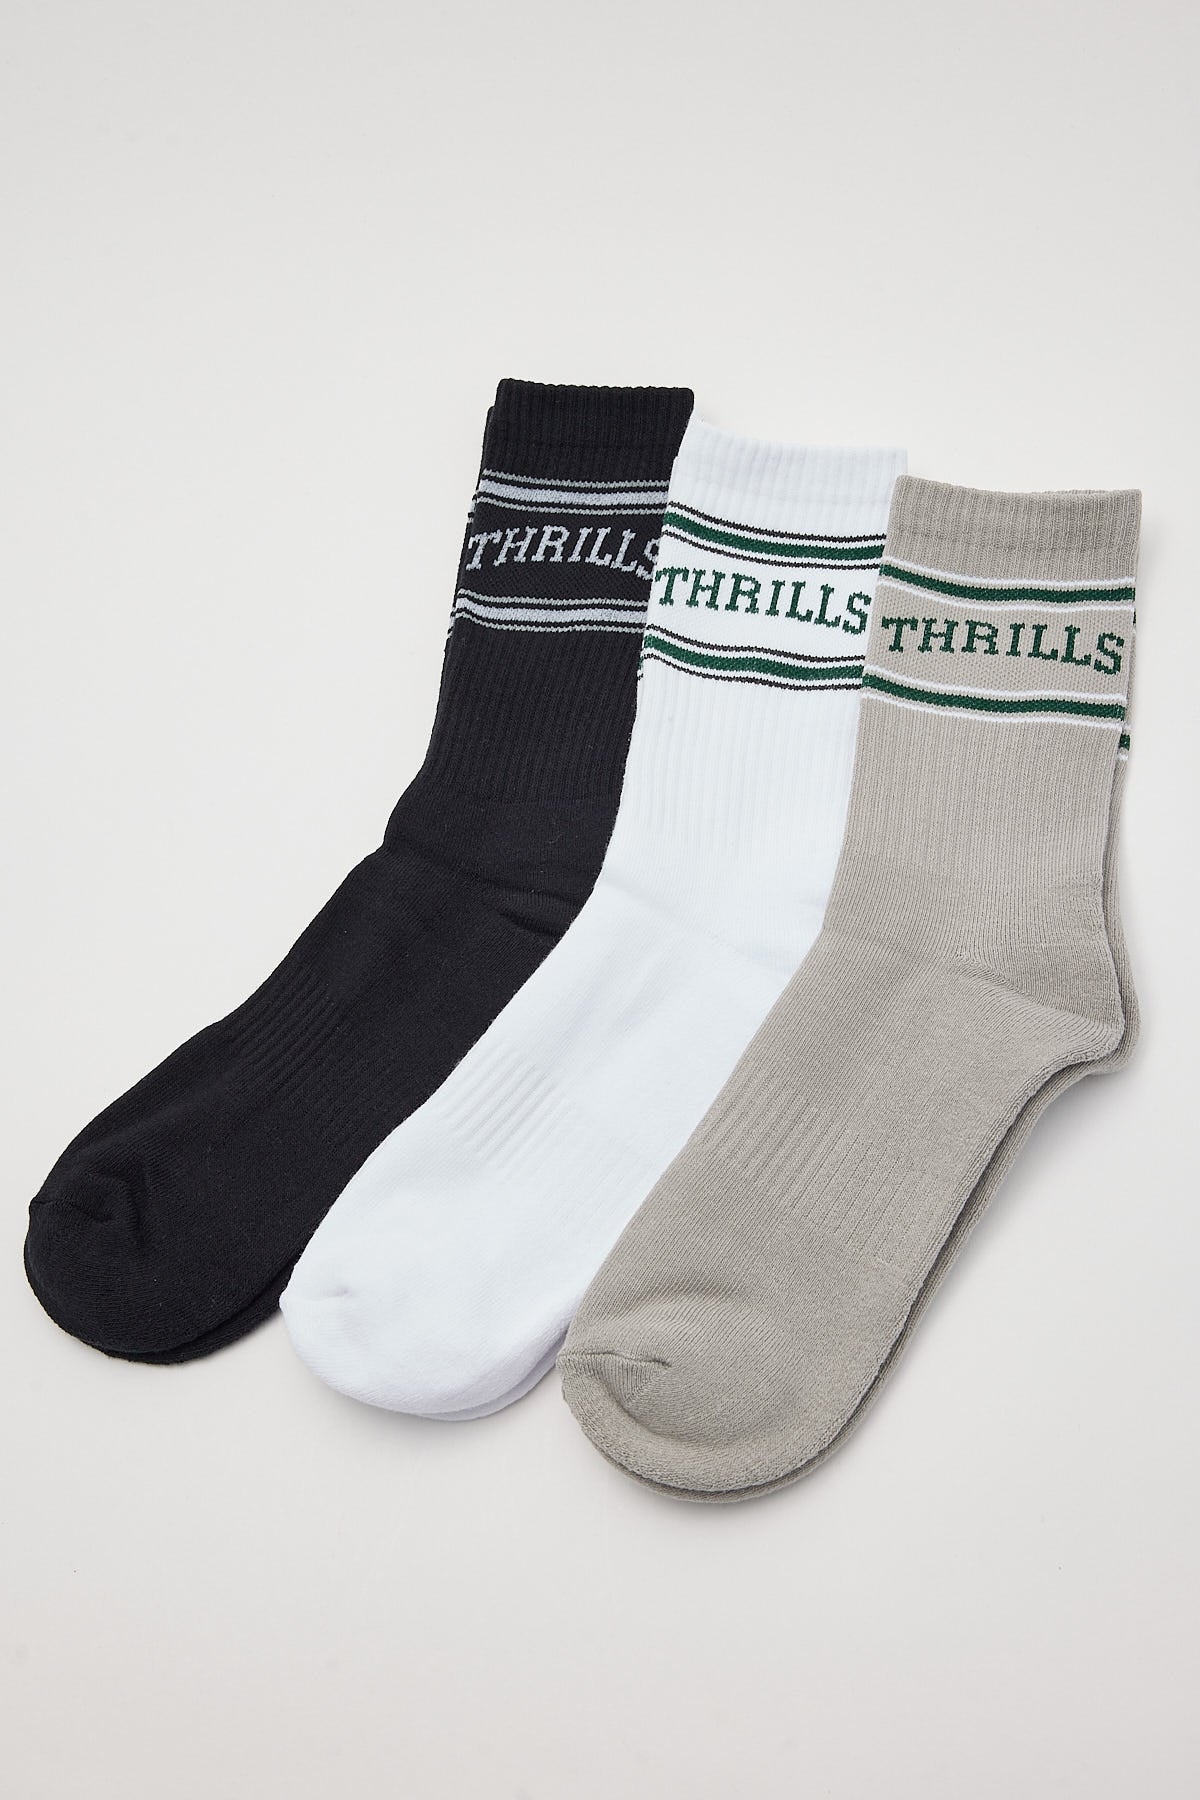 Thrills Believe 3 Pack Sock White/Quiet Grey/Black